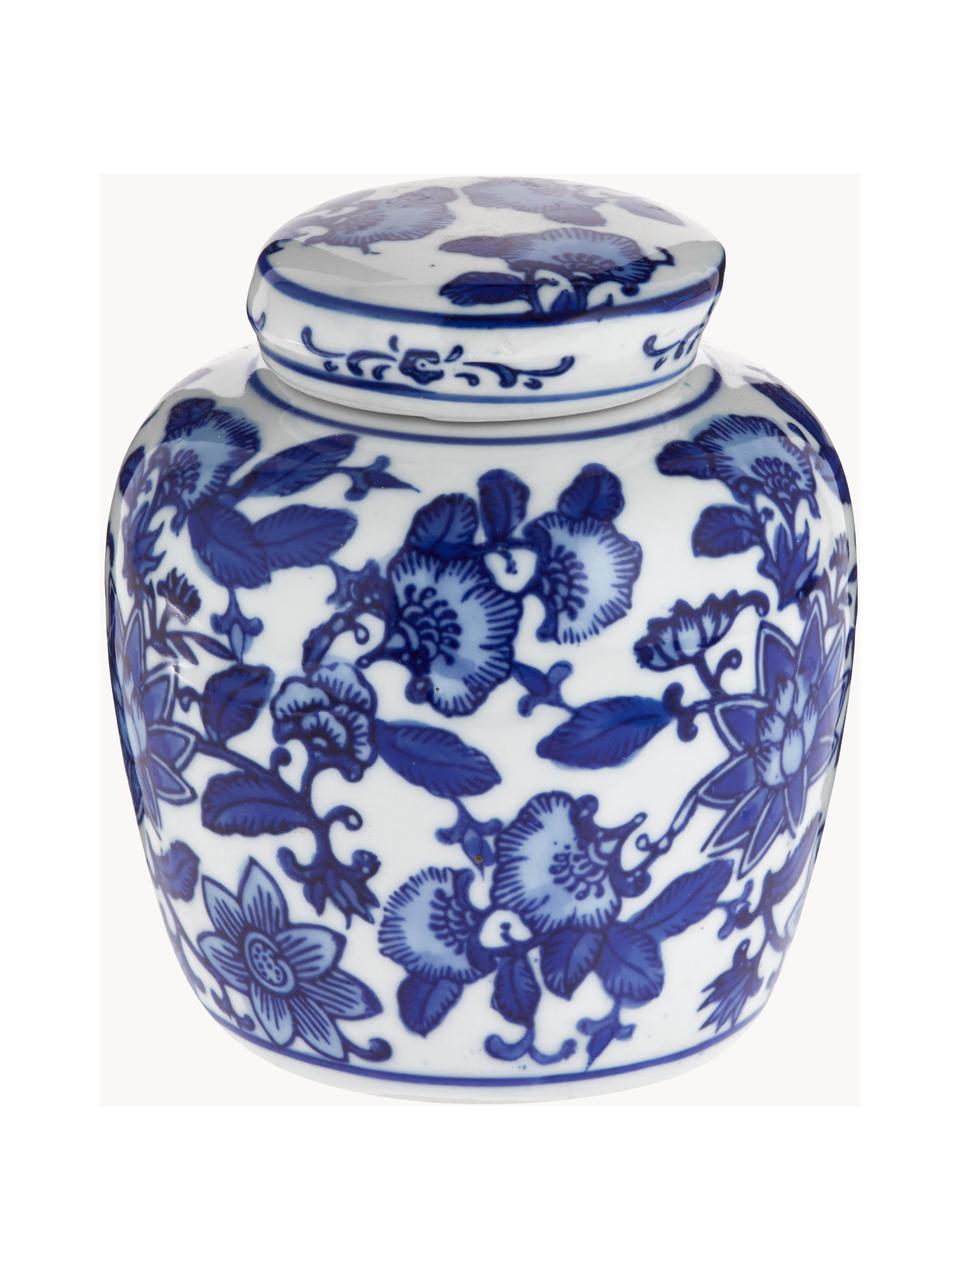 Malá porcelánová váza s víčkem Annabelle, V 13 cm, Porcelán, Modrá, bílá, Ø 11 cm, V 13 cm